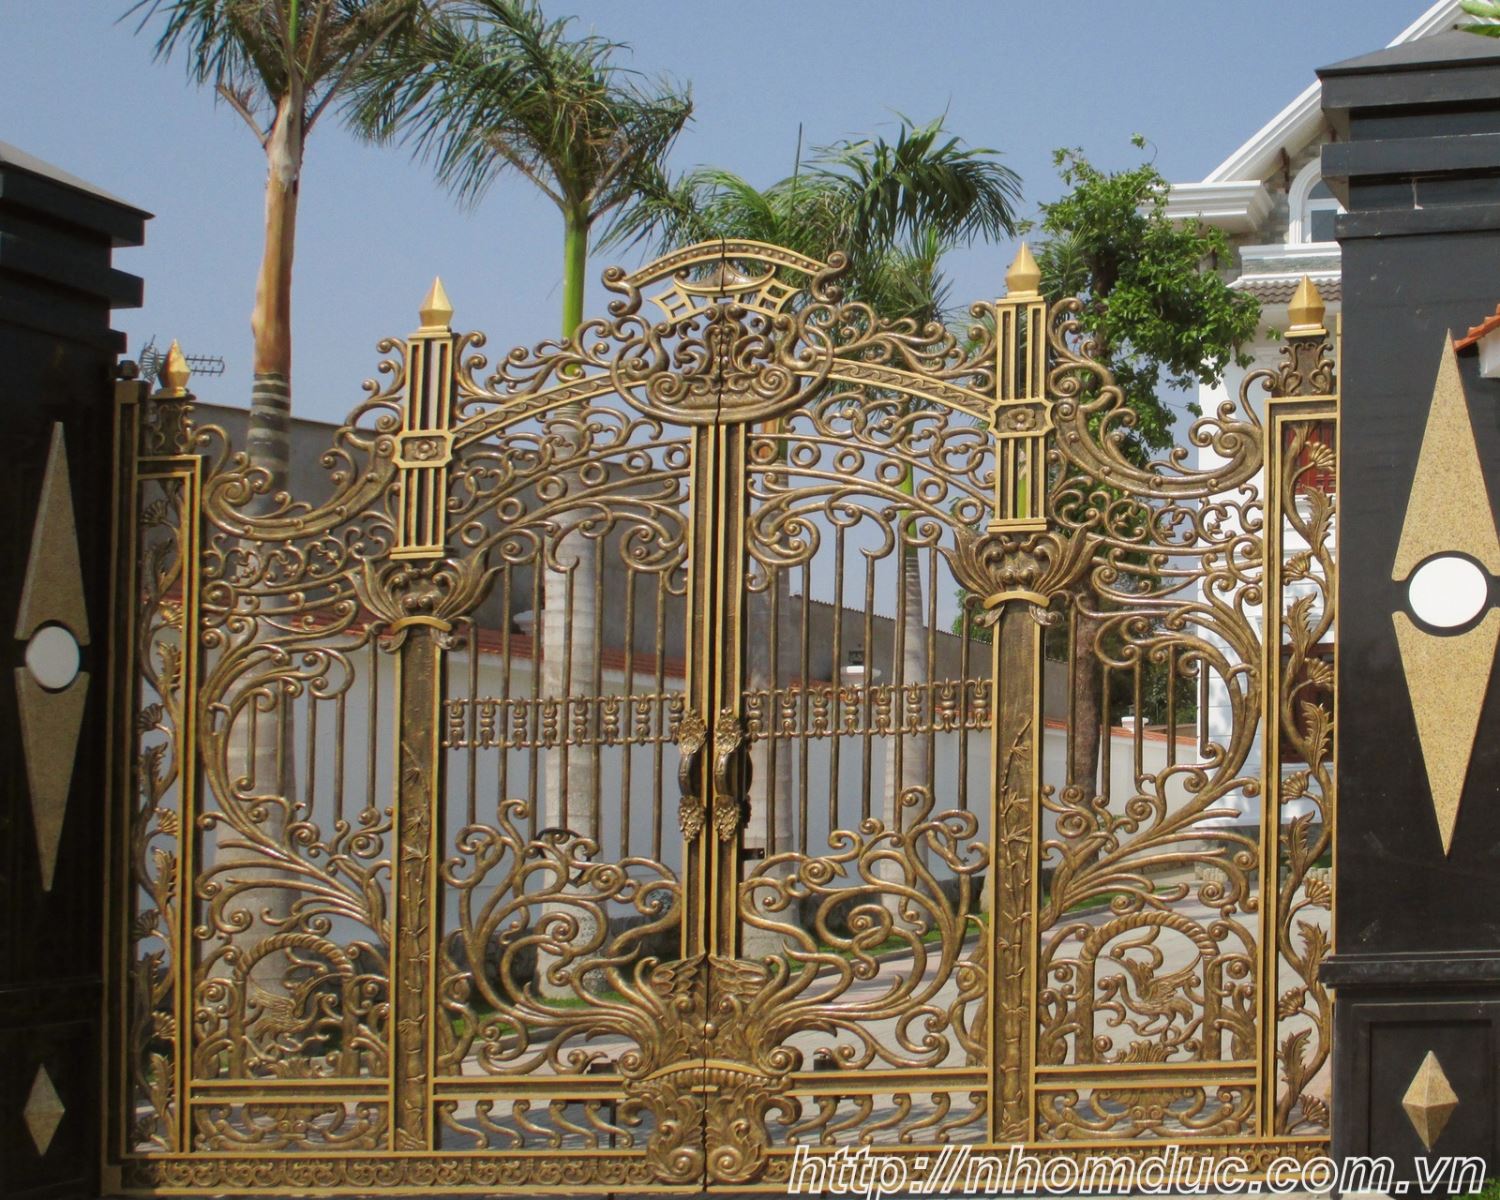 Thi công nhôm đúc tại Đồng Nai, Biên Hòa, Nhôm đúc Biên Hòa, chuyên thiết kế thi công cổng nhôm đúc Fuco tại Biên Hòa Đồng Nai